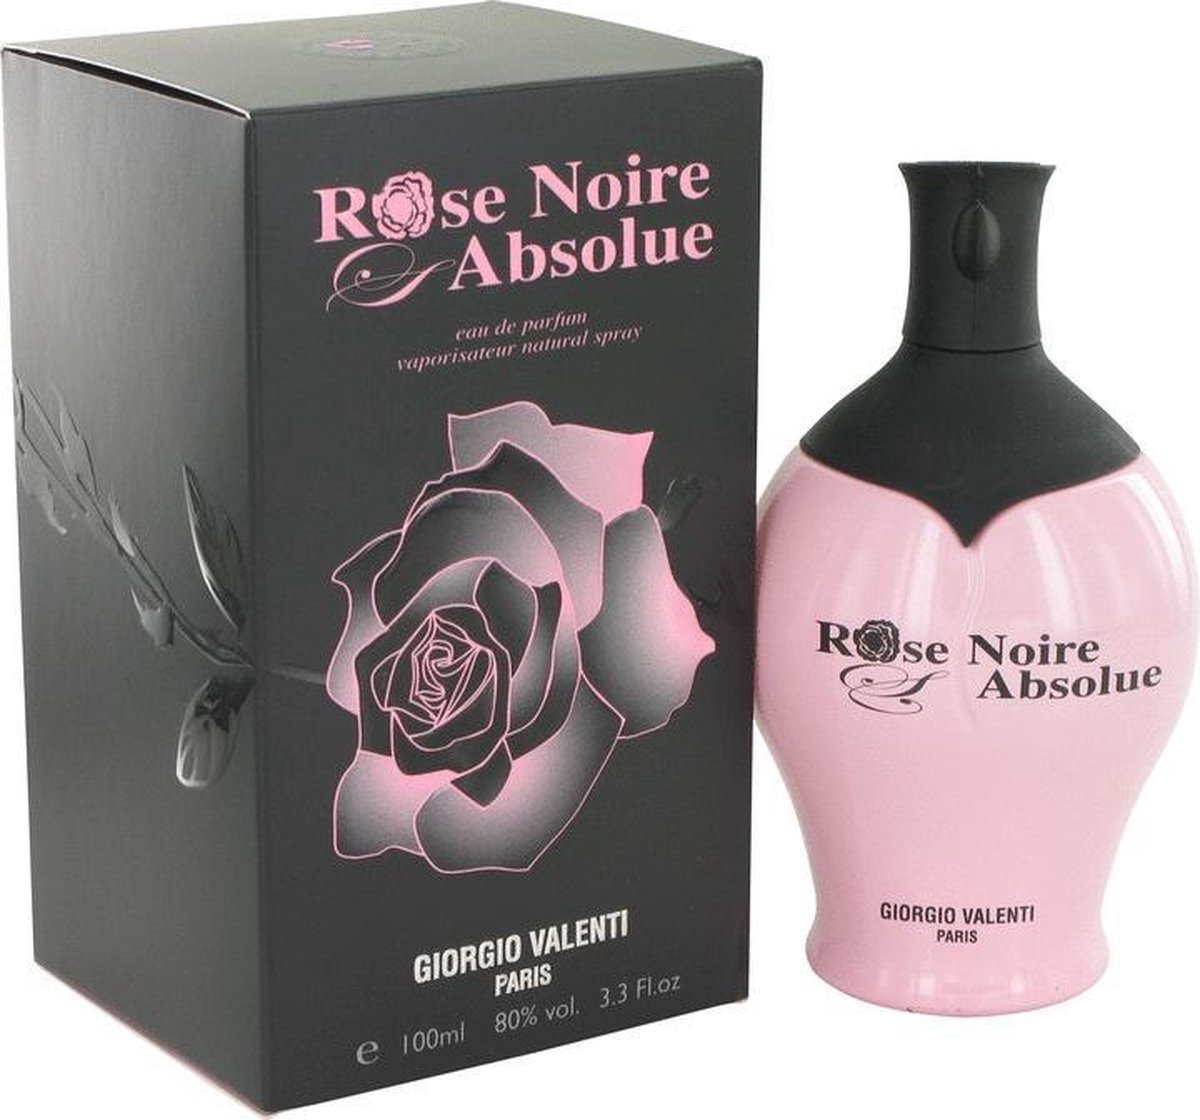 Rose Noire Absolue by Giorgio Valenti 100 ml - Eau De Parfum Spray